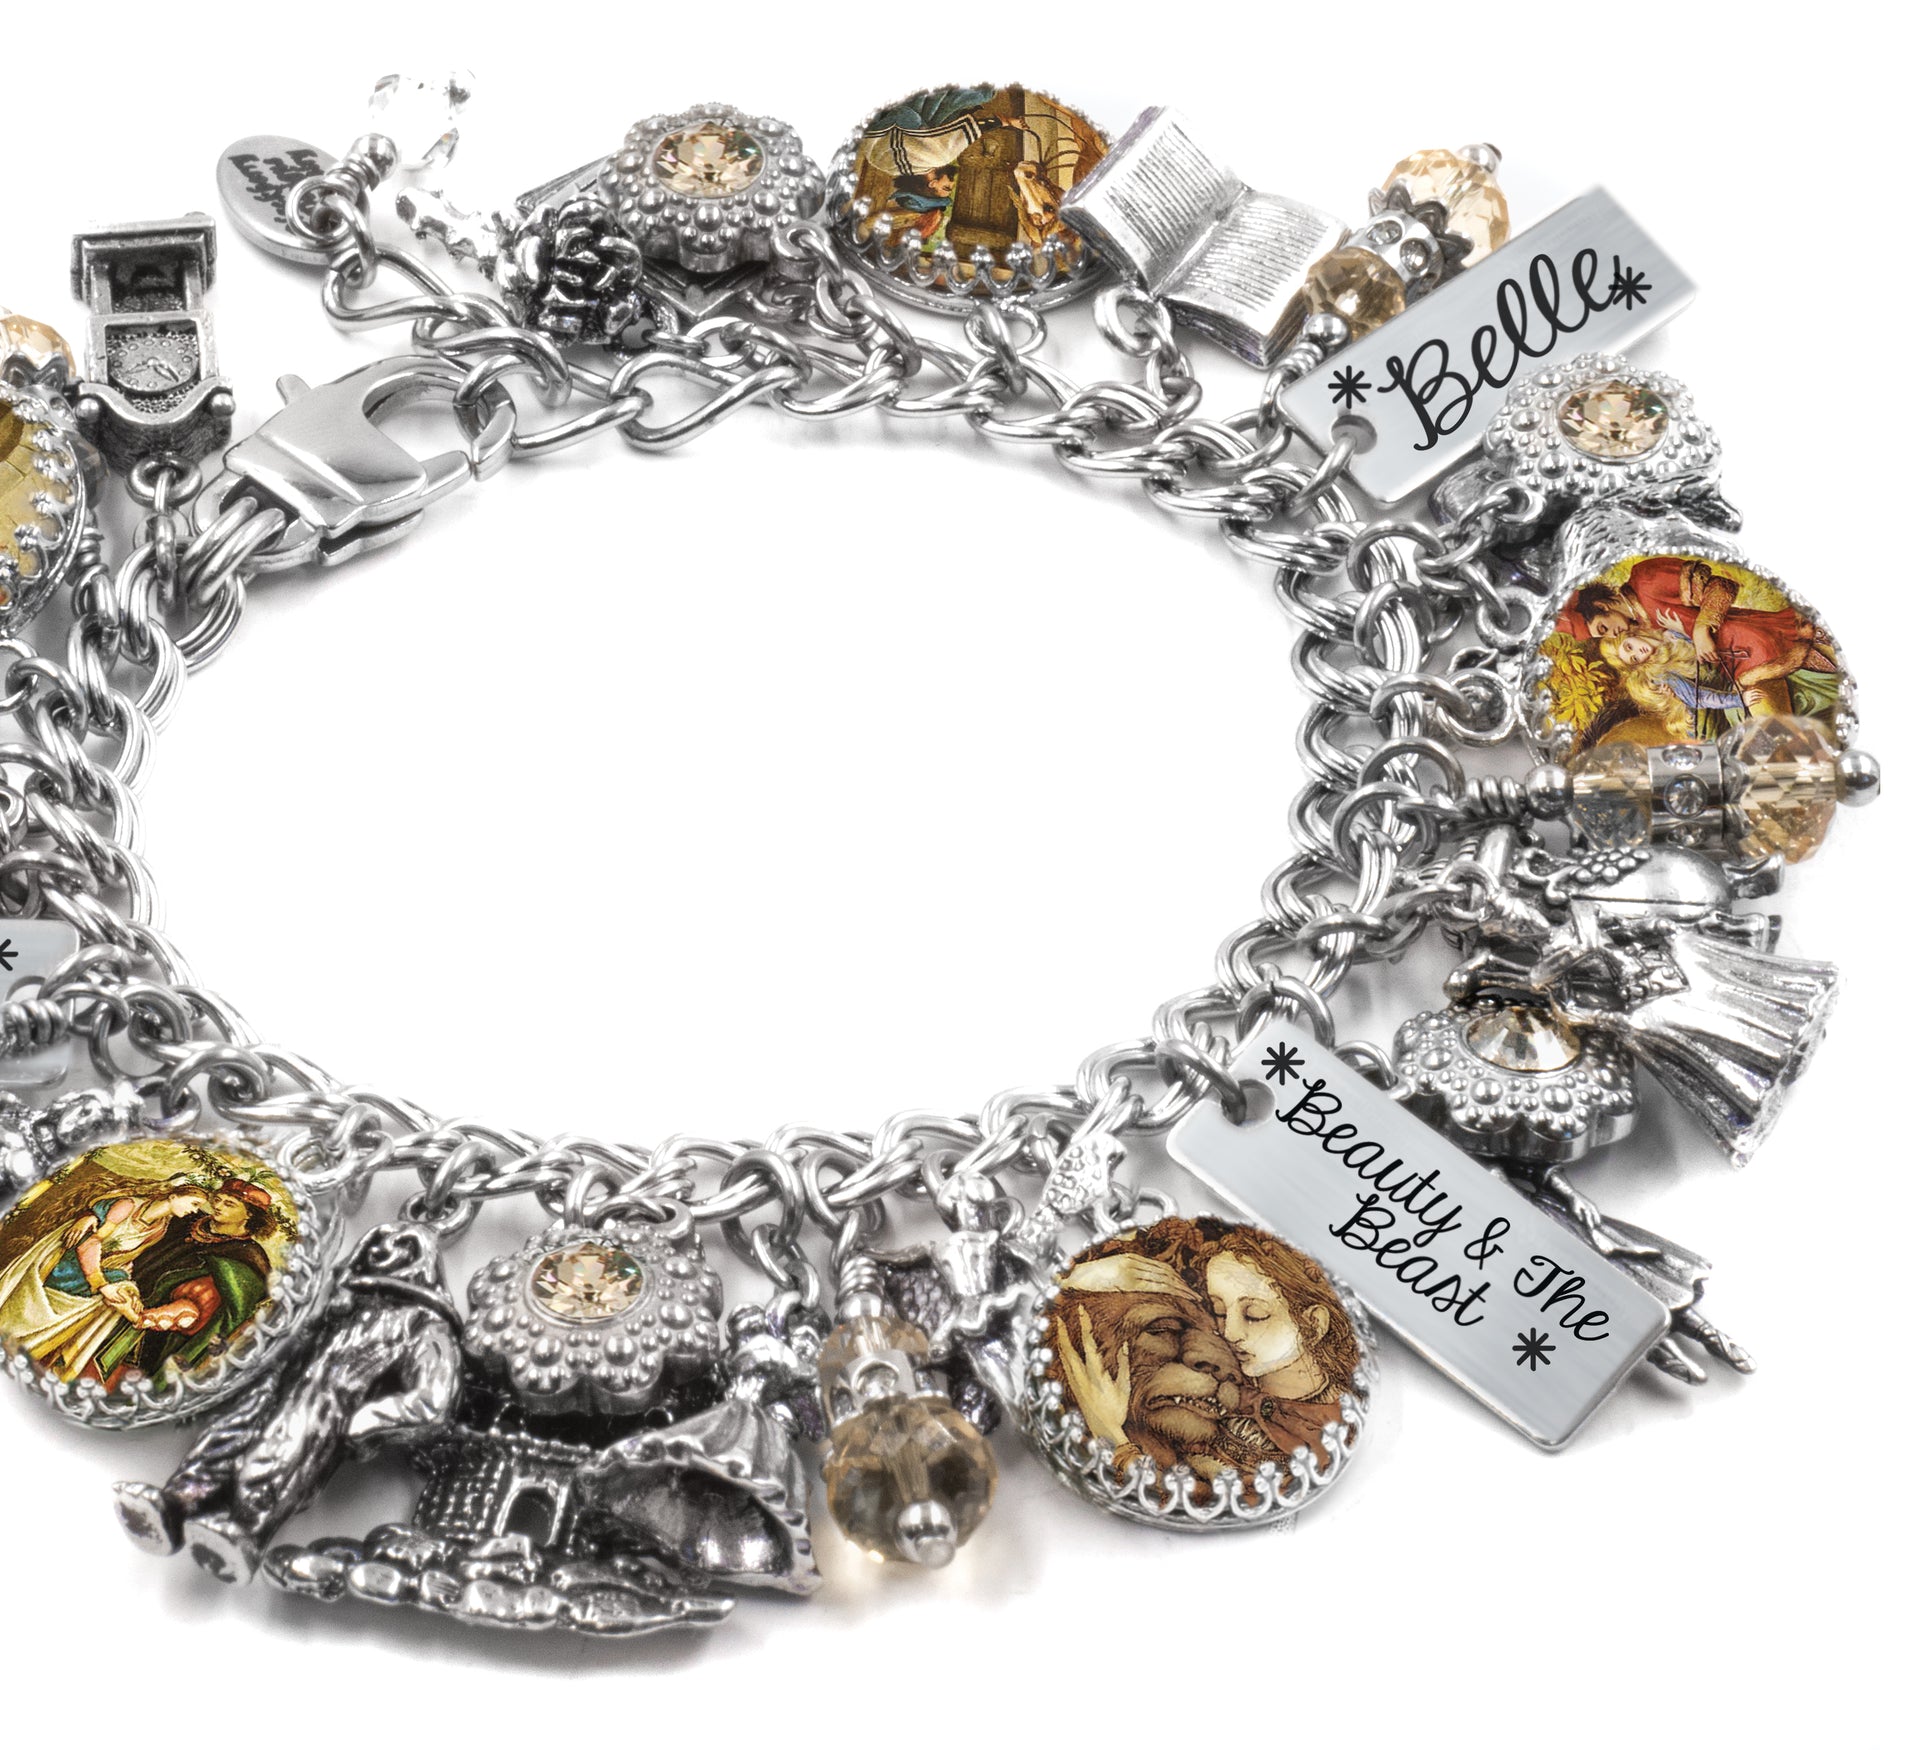 beauty and beast jewelry charm bracelet